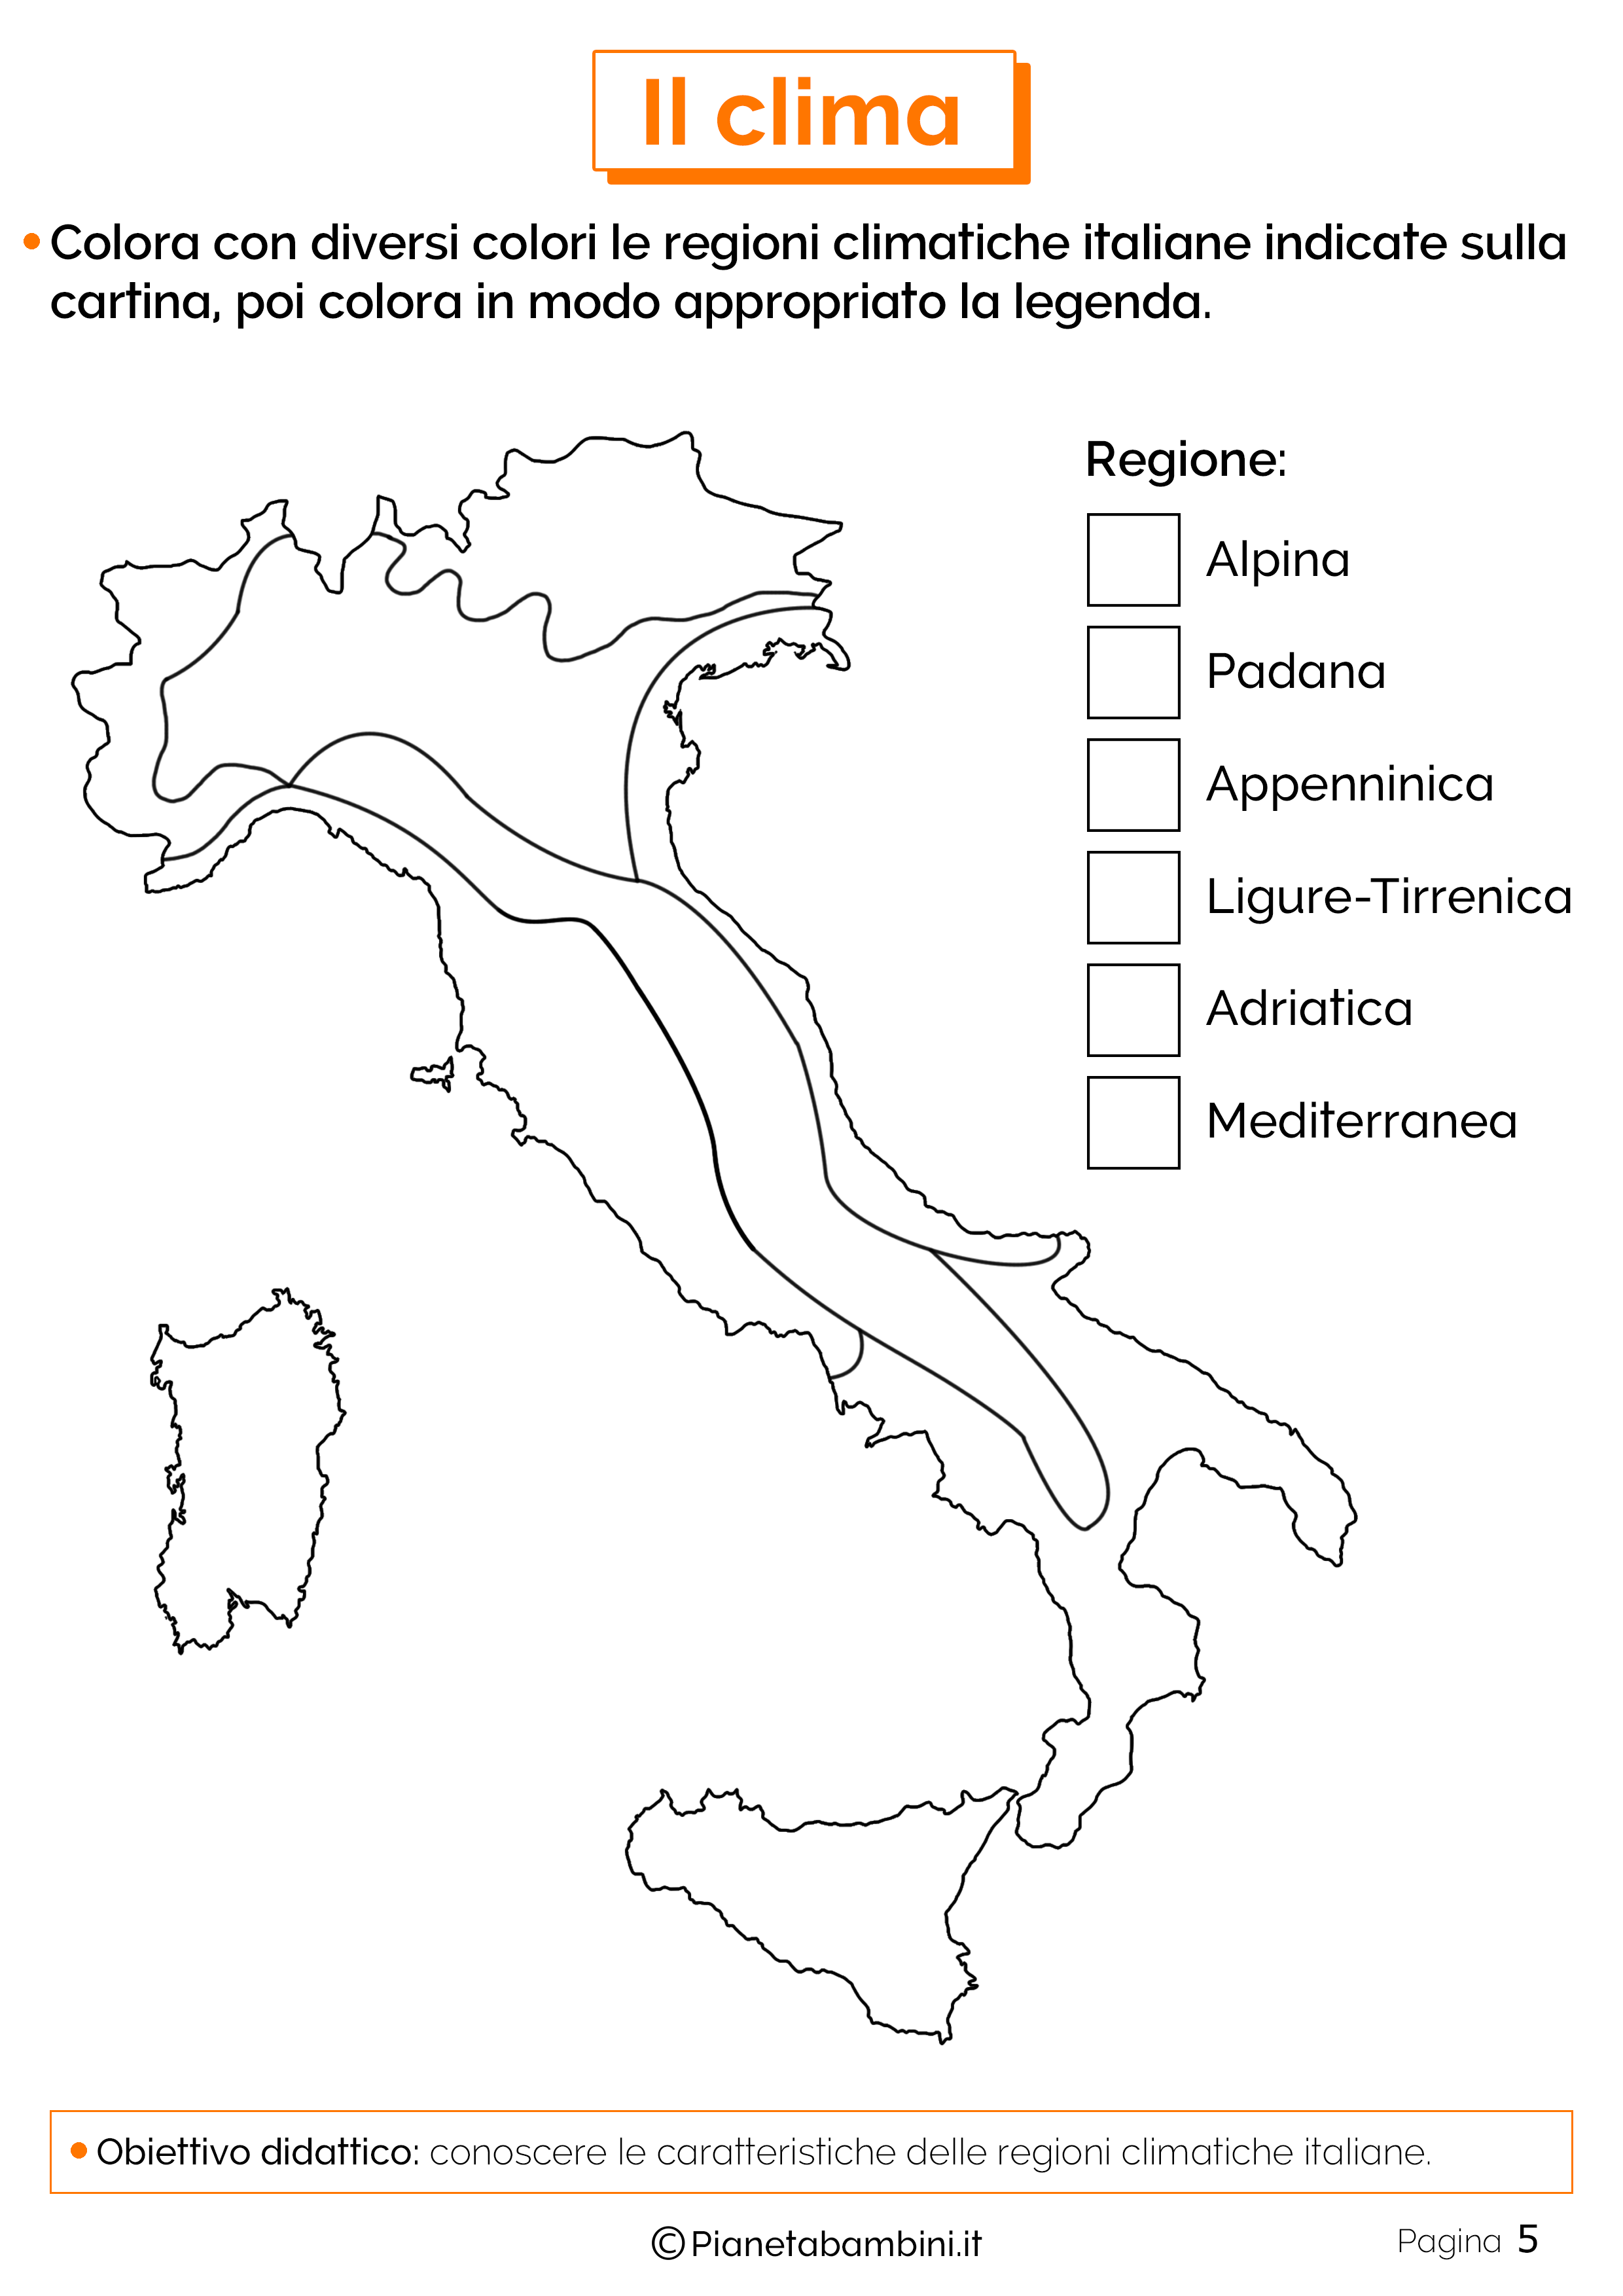 Le regioni climatiche della penisola italiana